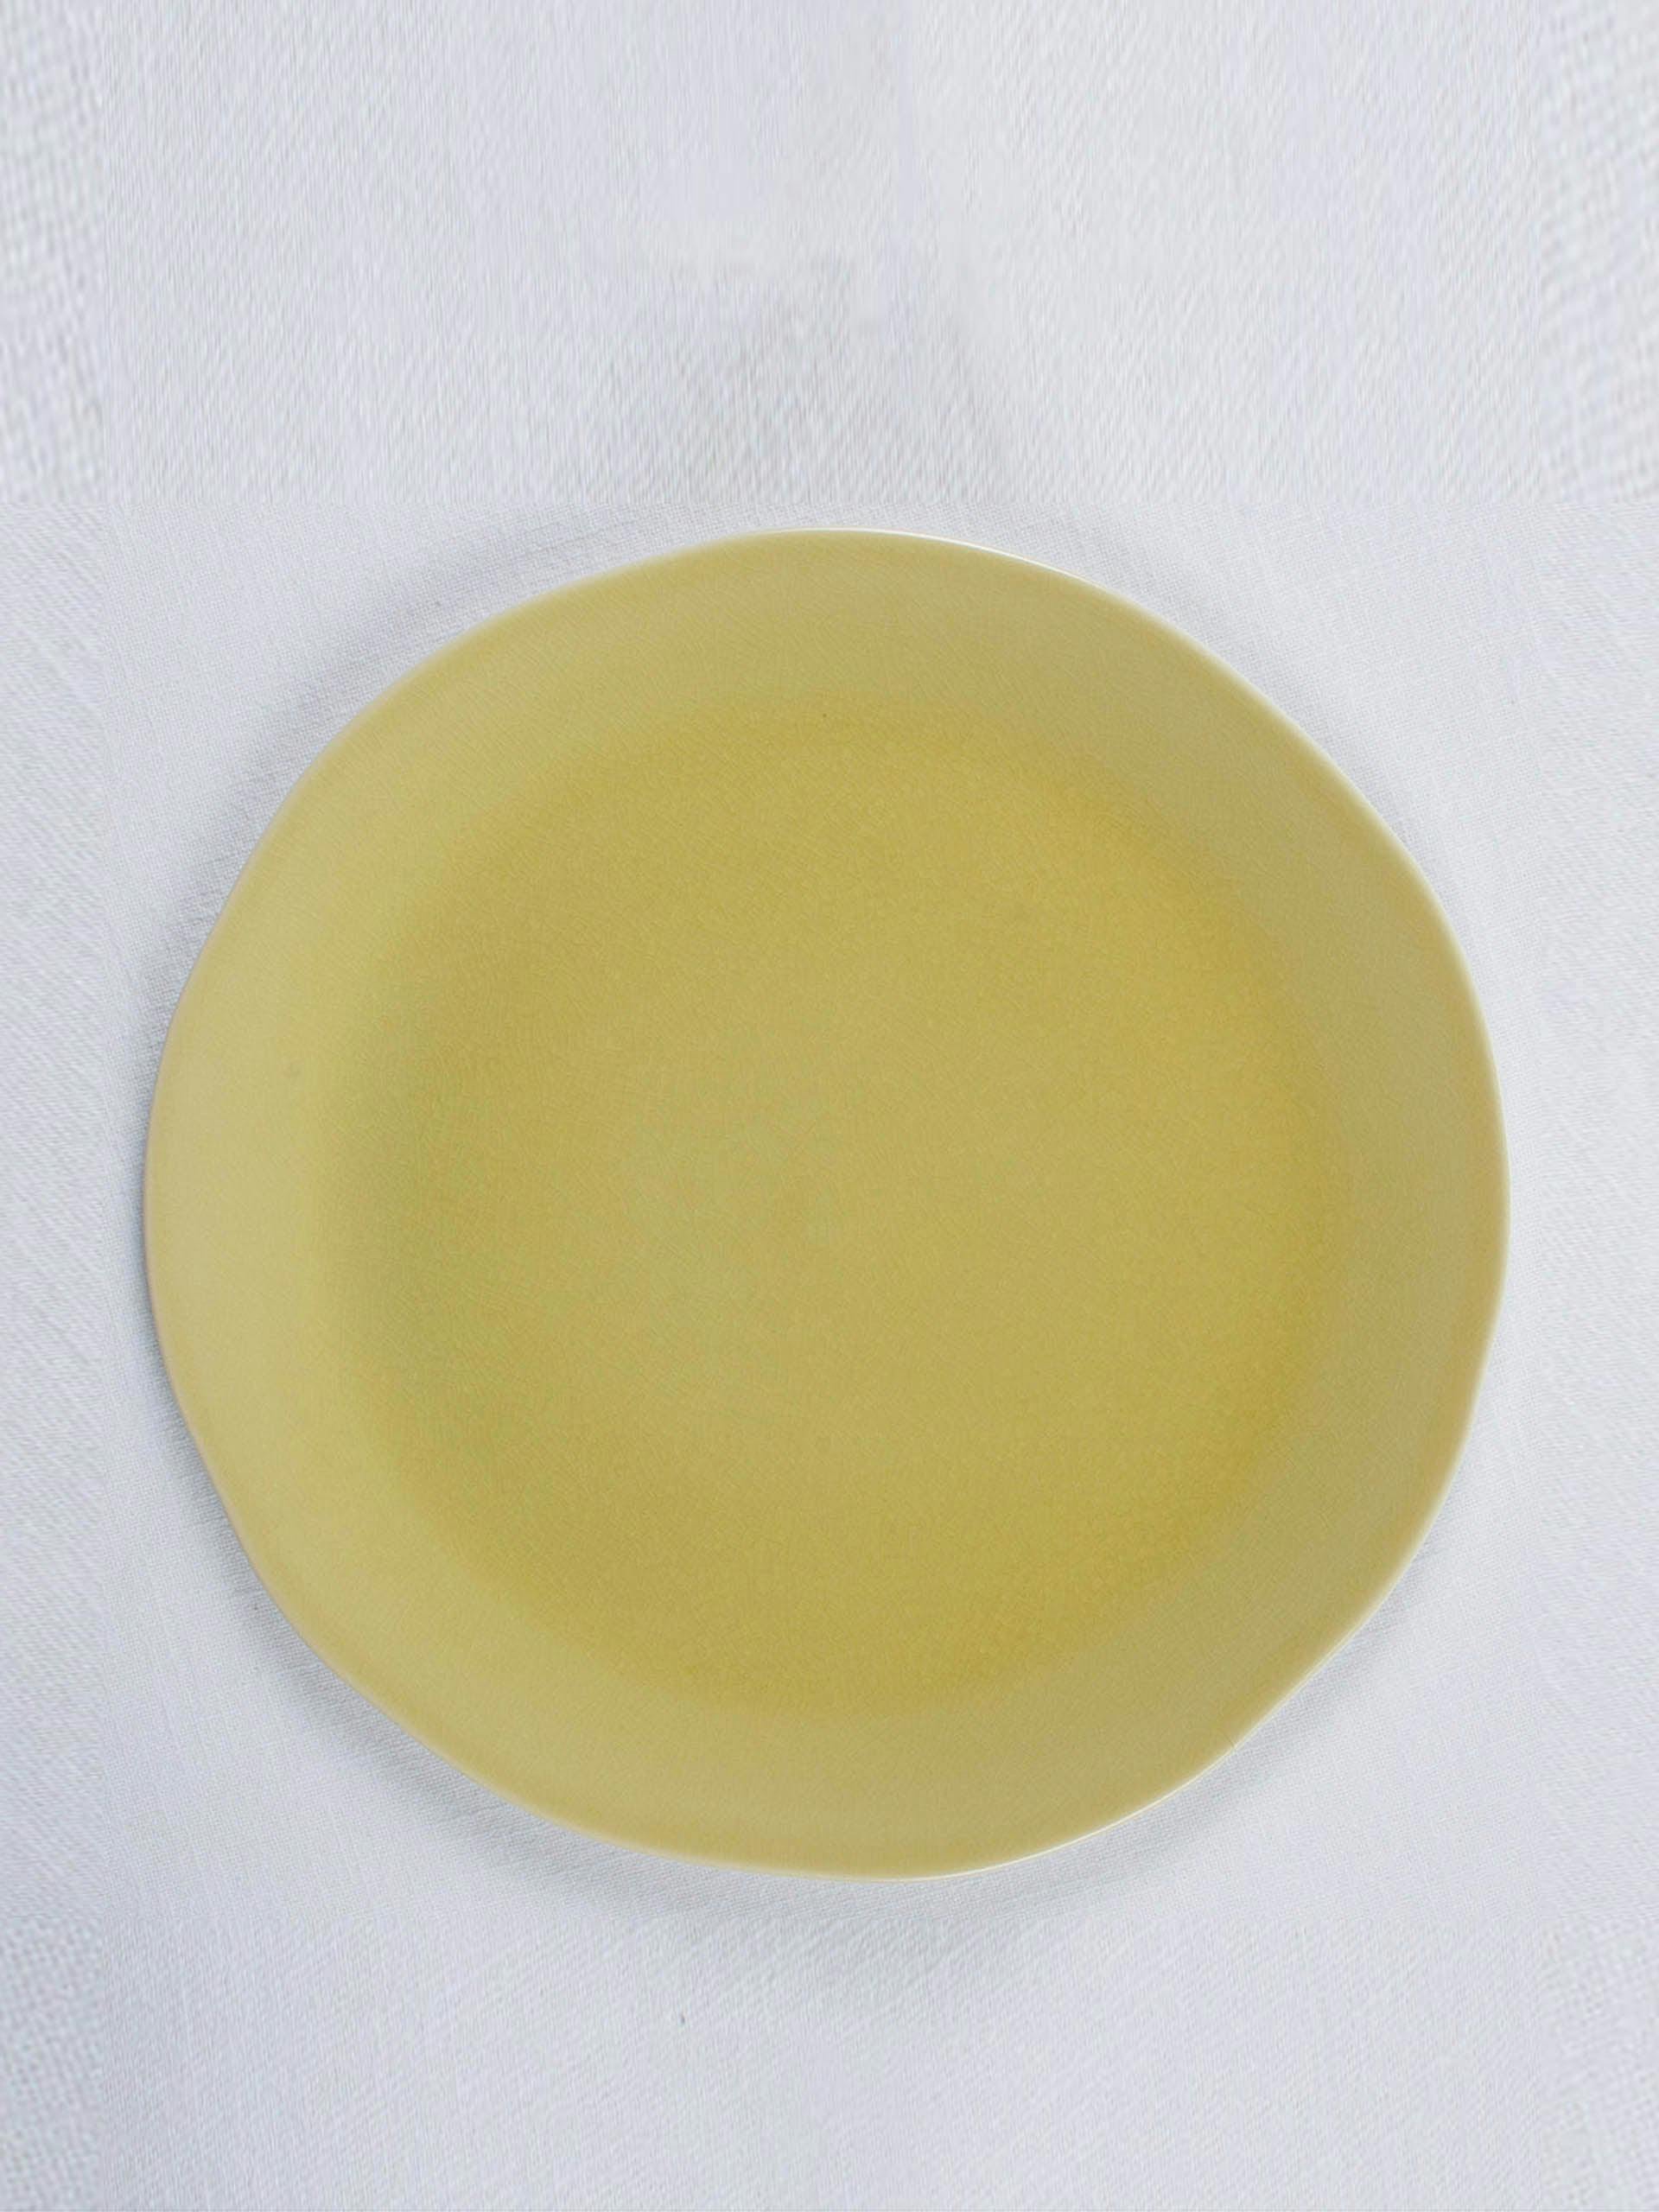 Glazed serving plate in Genet